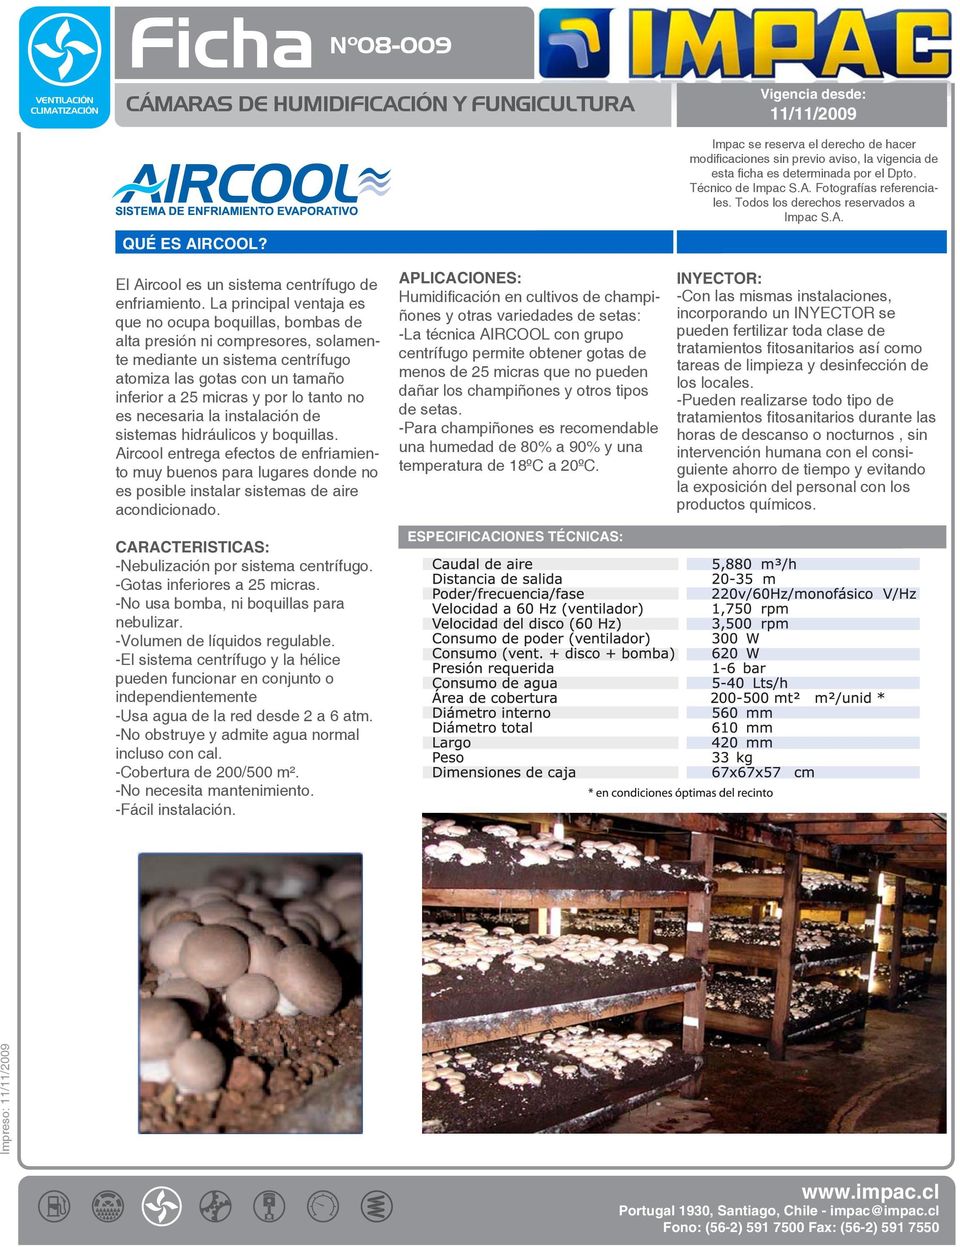 es necesaria la instalación de sistemas hidráulicos y boquillas. Aircool entrega efectos de enfriamiento muy buenos para lugares donde no es posible instalar sistemas de aire acondicionado.